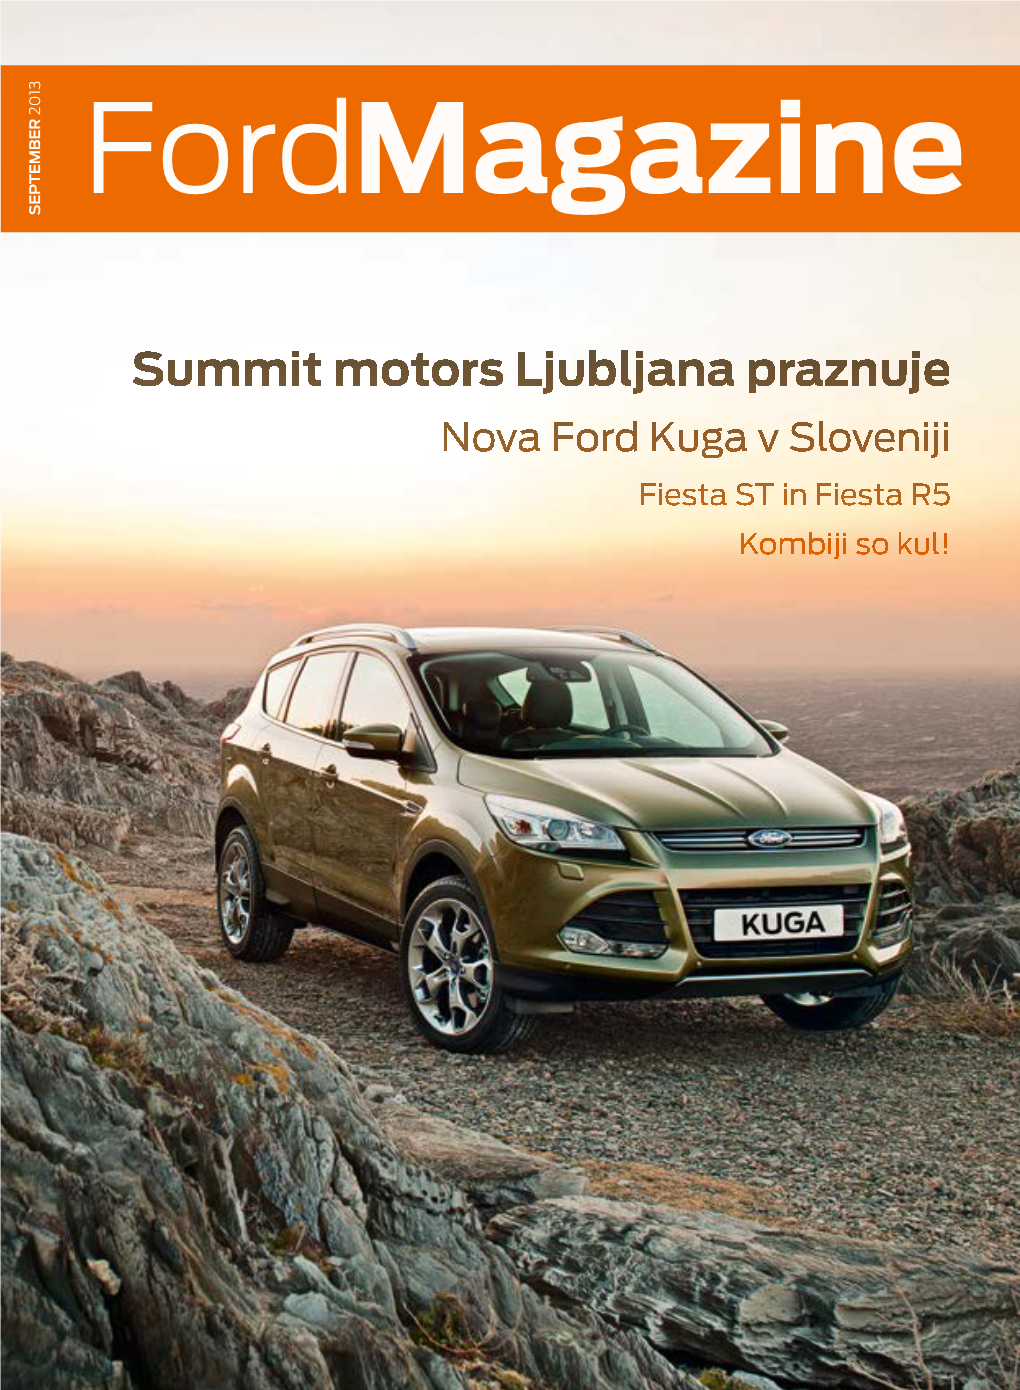 Summit Motors Ljubljana Praznuje Nova Ford Kuga V Sloveniji Fiesta ST in Fiesta R5 Kombiji So Kul! NOVI FORD B-MAX